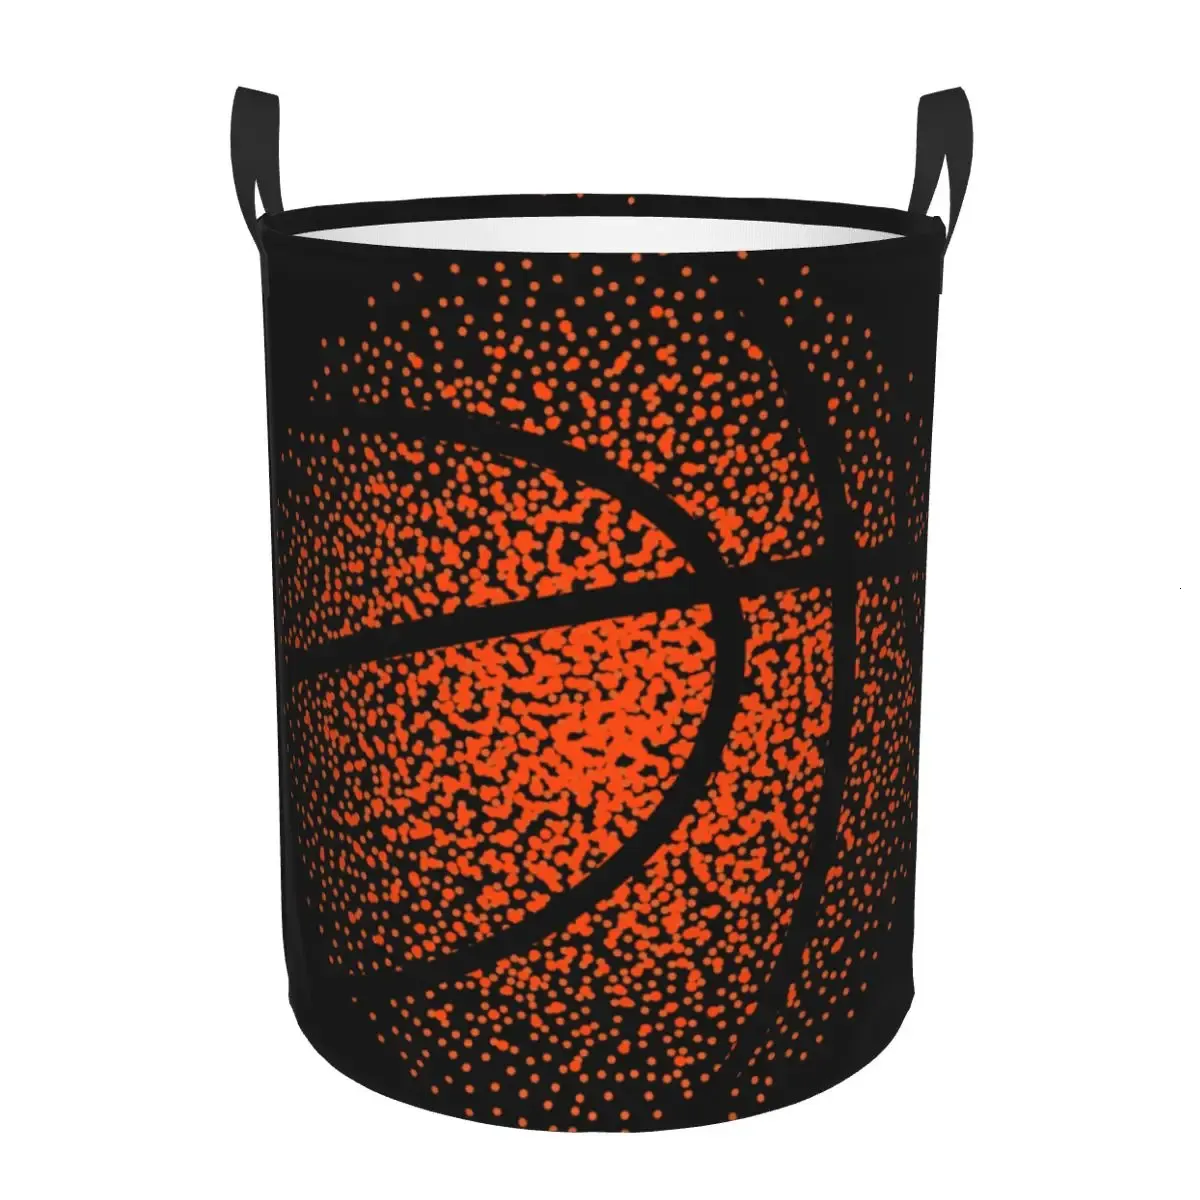 Składane pralni koszykówki koszykówki okrągły do ​​przechowywania duży kosz z zamieszania w kadrze